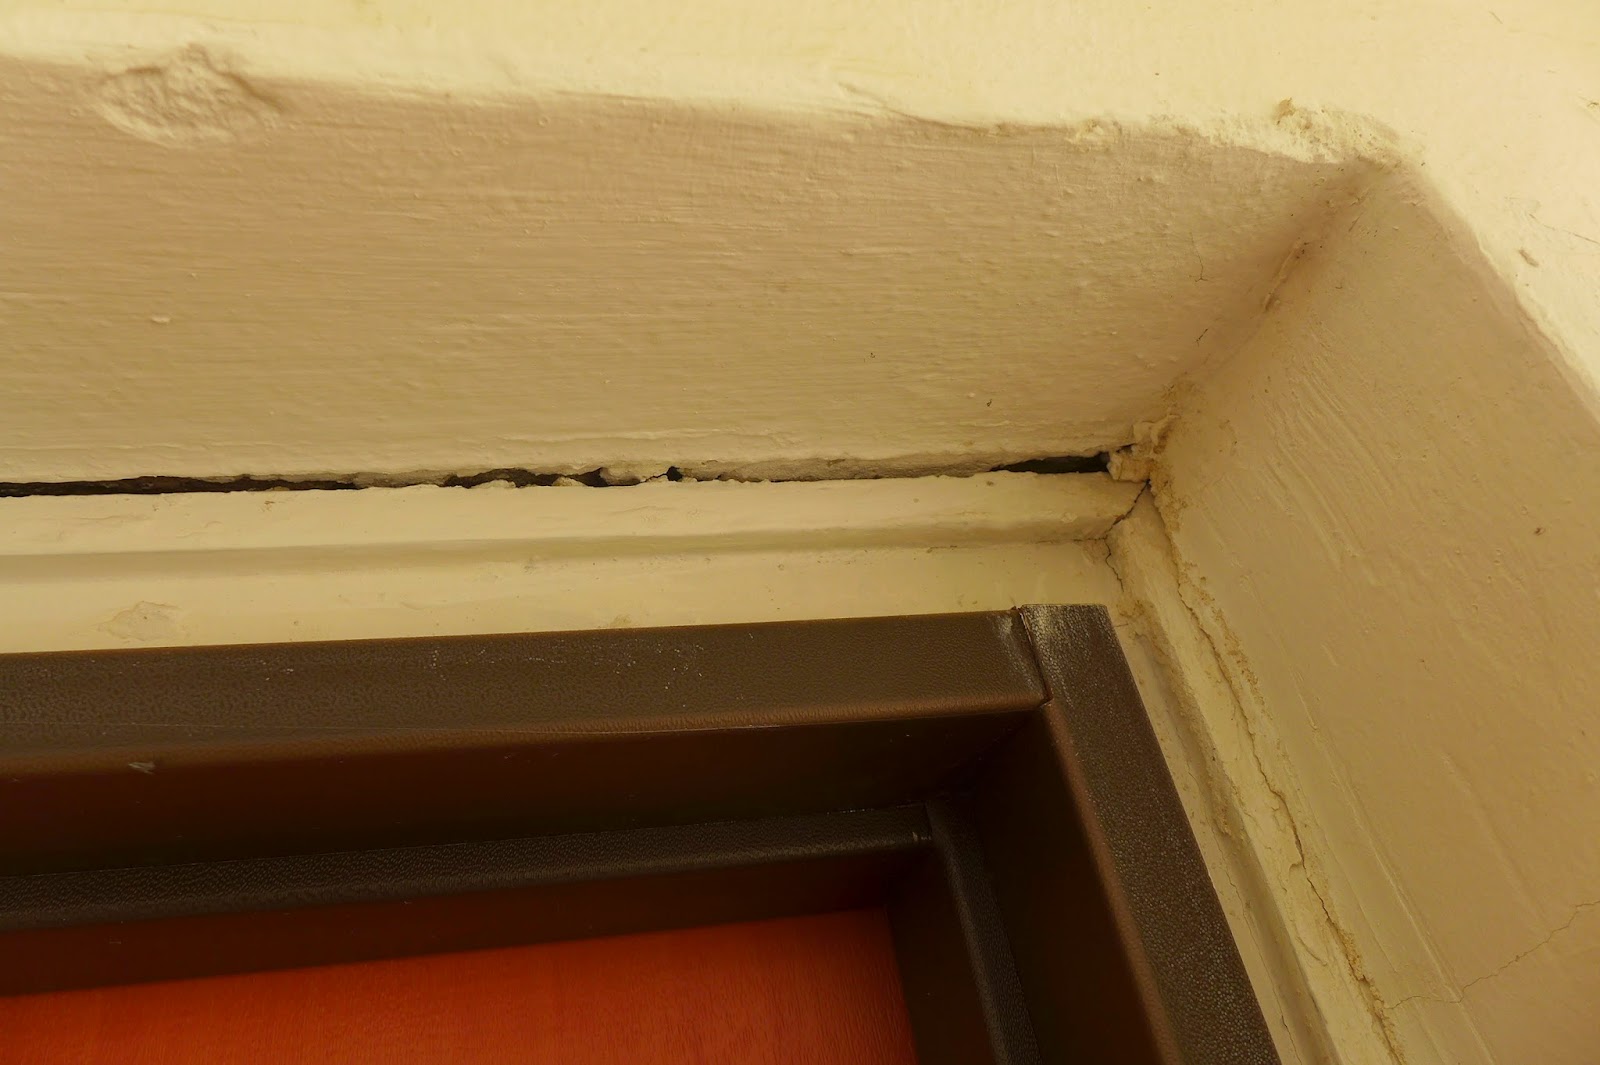 סדק בקיר באזור משקוף דלת הכניסה לדירה עקב בעיטות בלשי משטרת ישראל מרחב דן בדלת